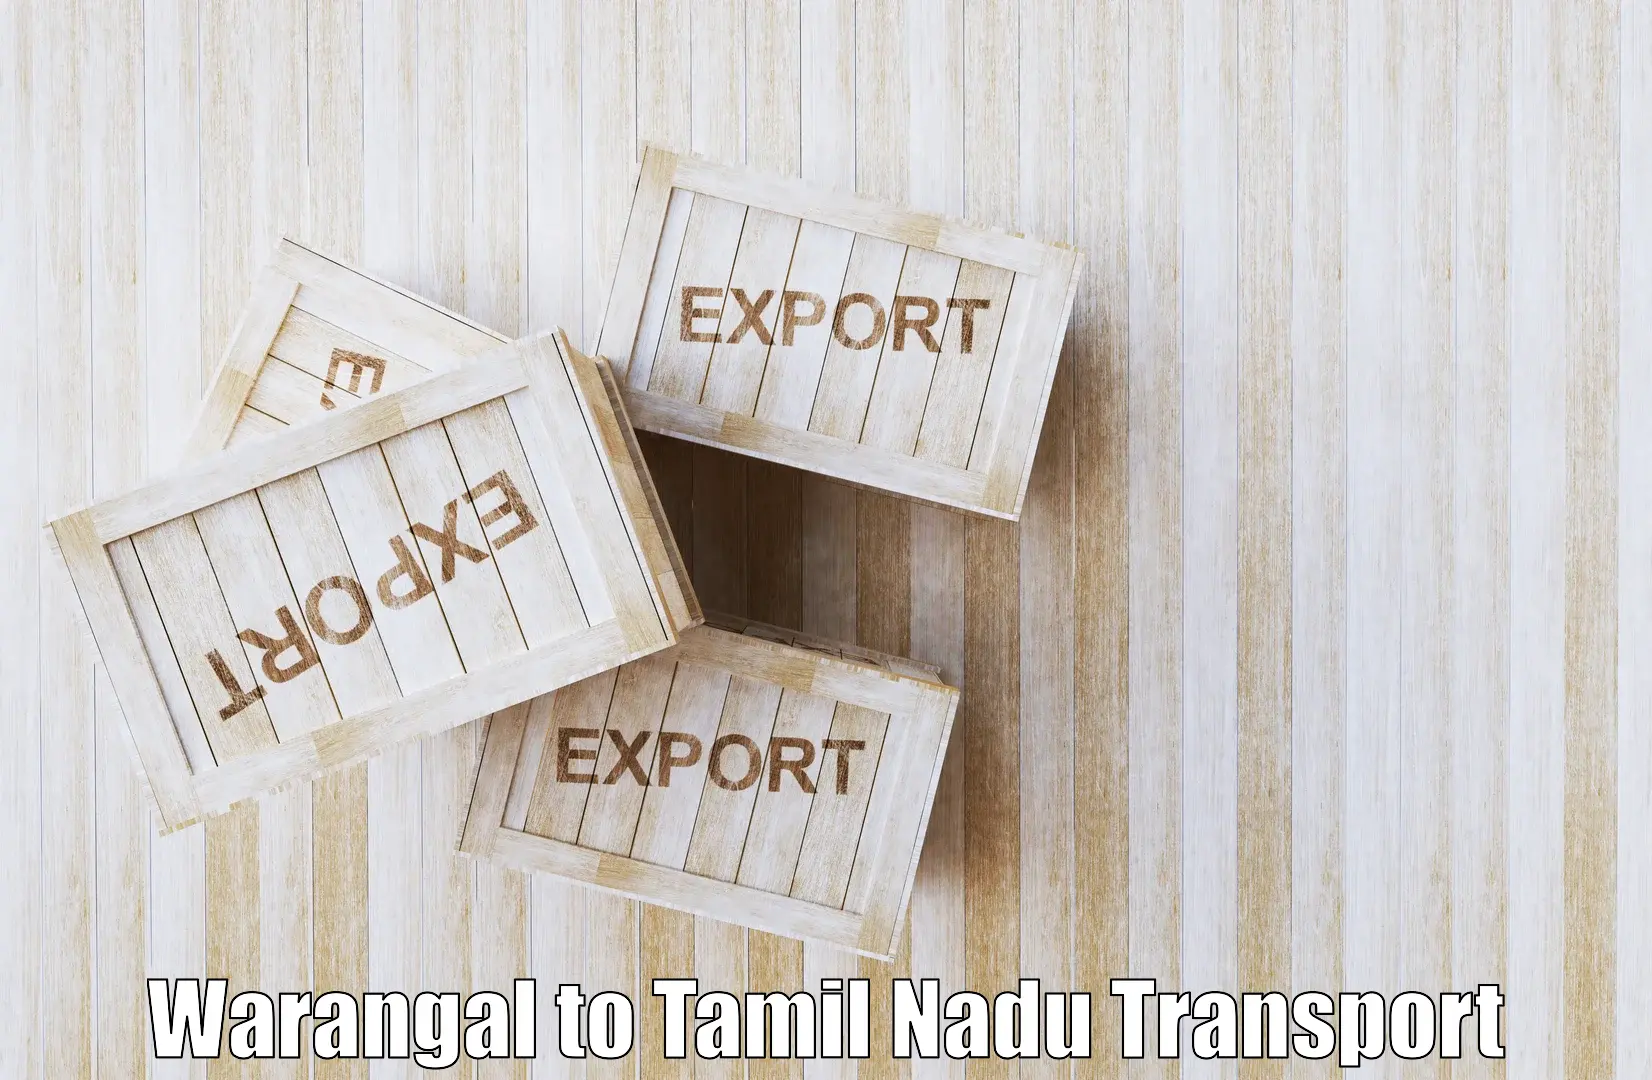 Interstate transport services Warangal to Peikulam